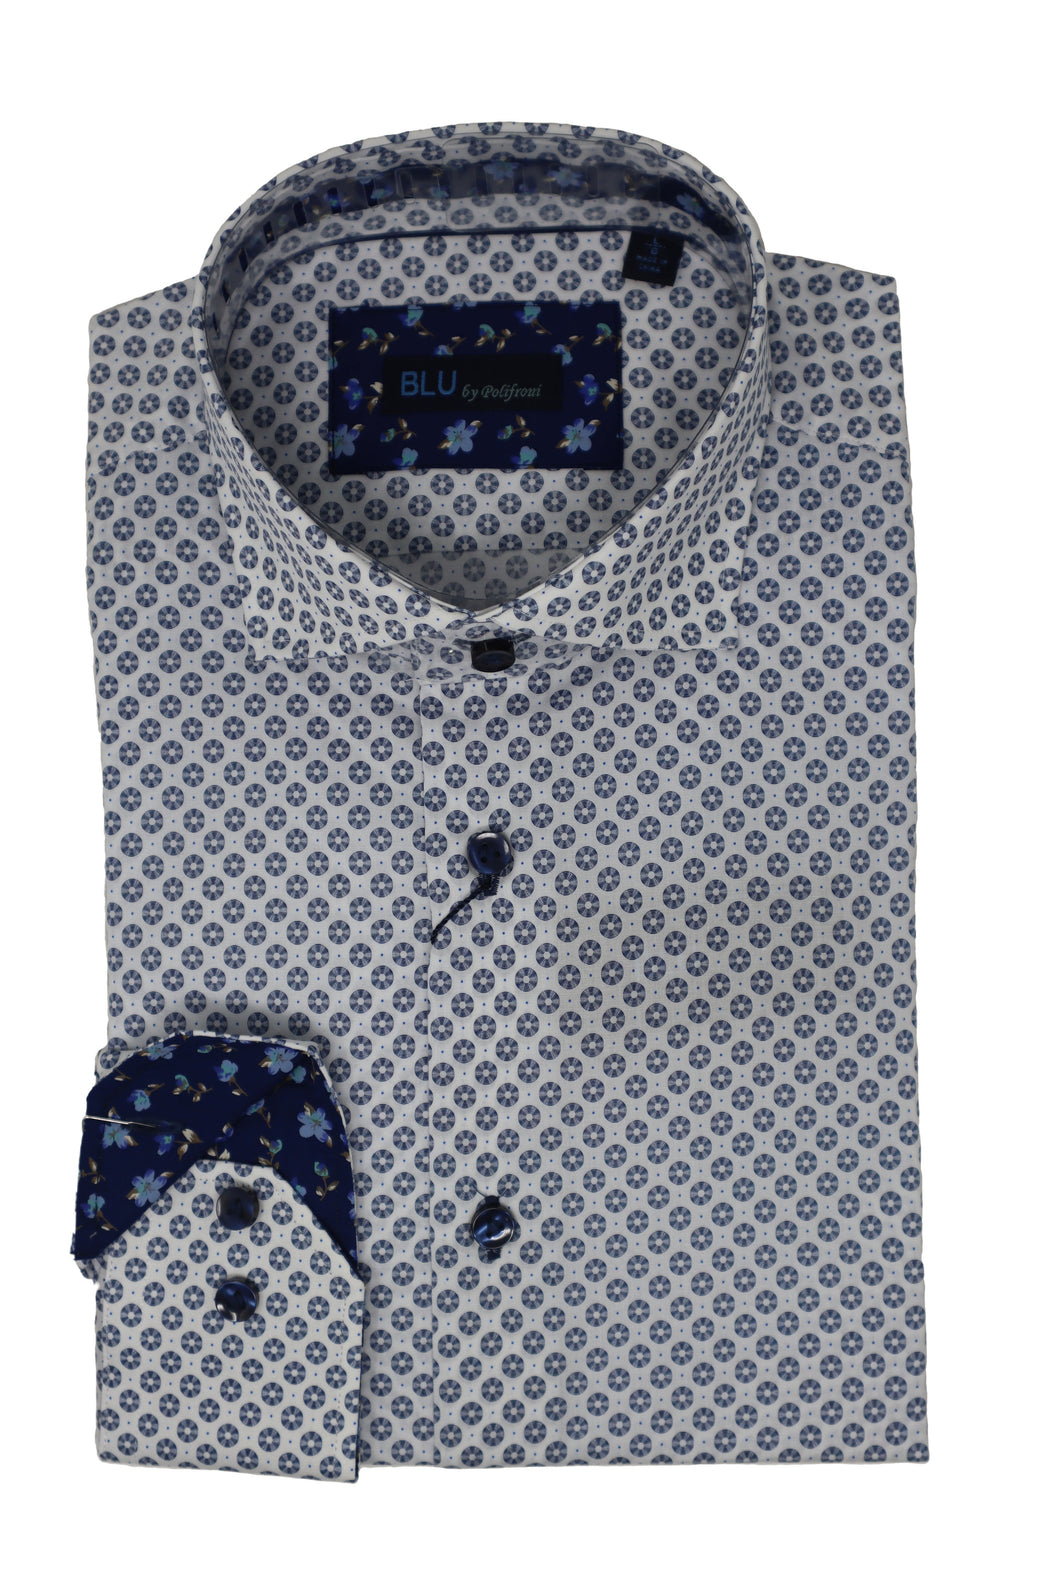 Men's | BLU By Polifroni | B-2249620 | Sport Shirt Prato2 | Blue Circle